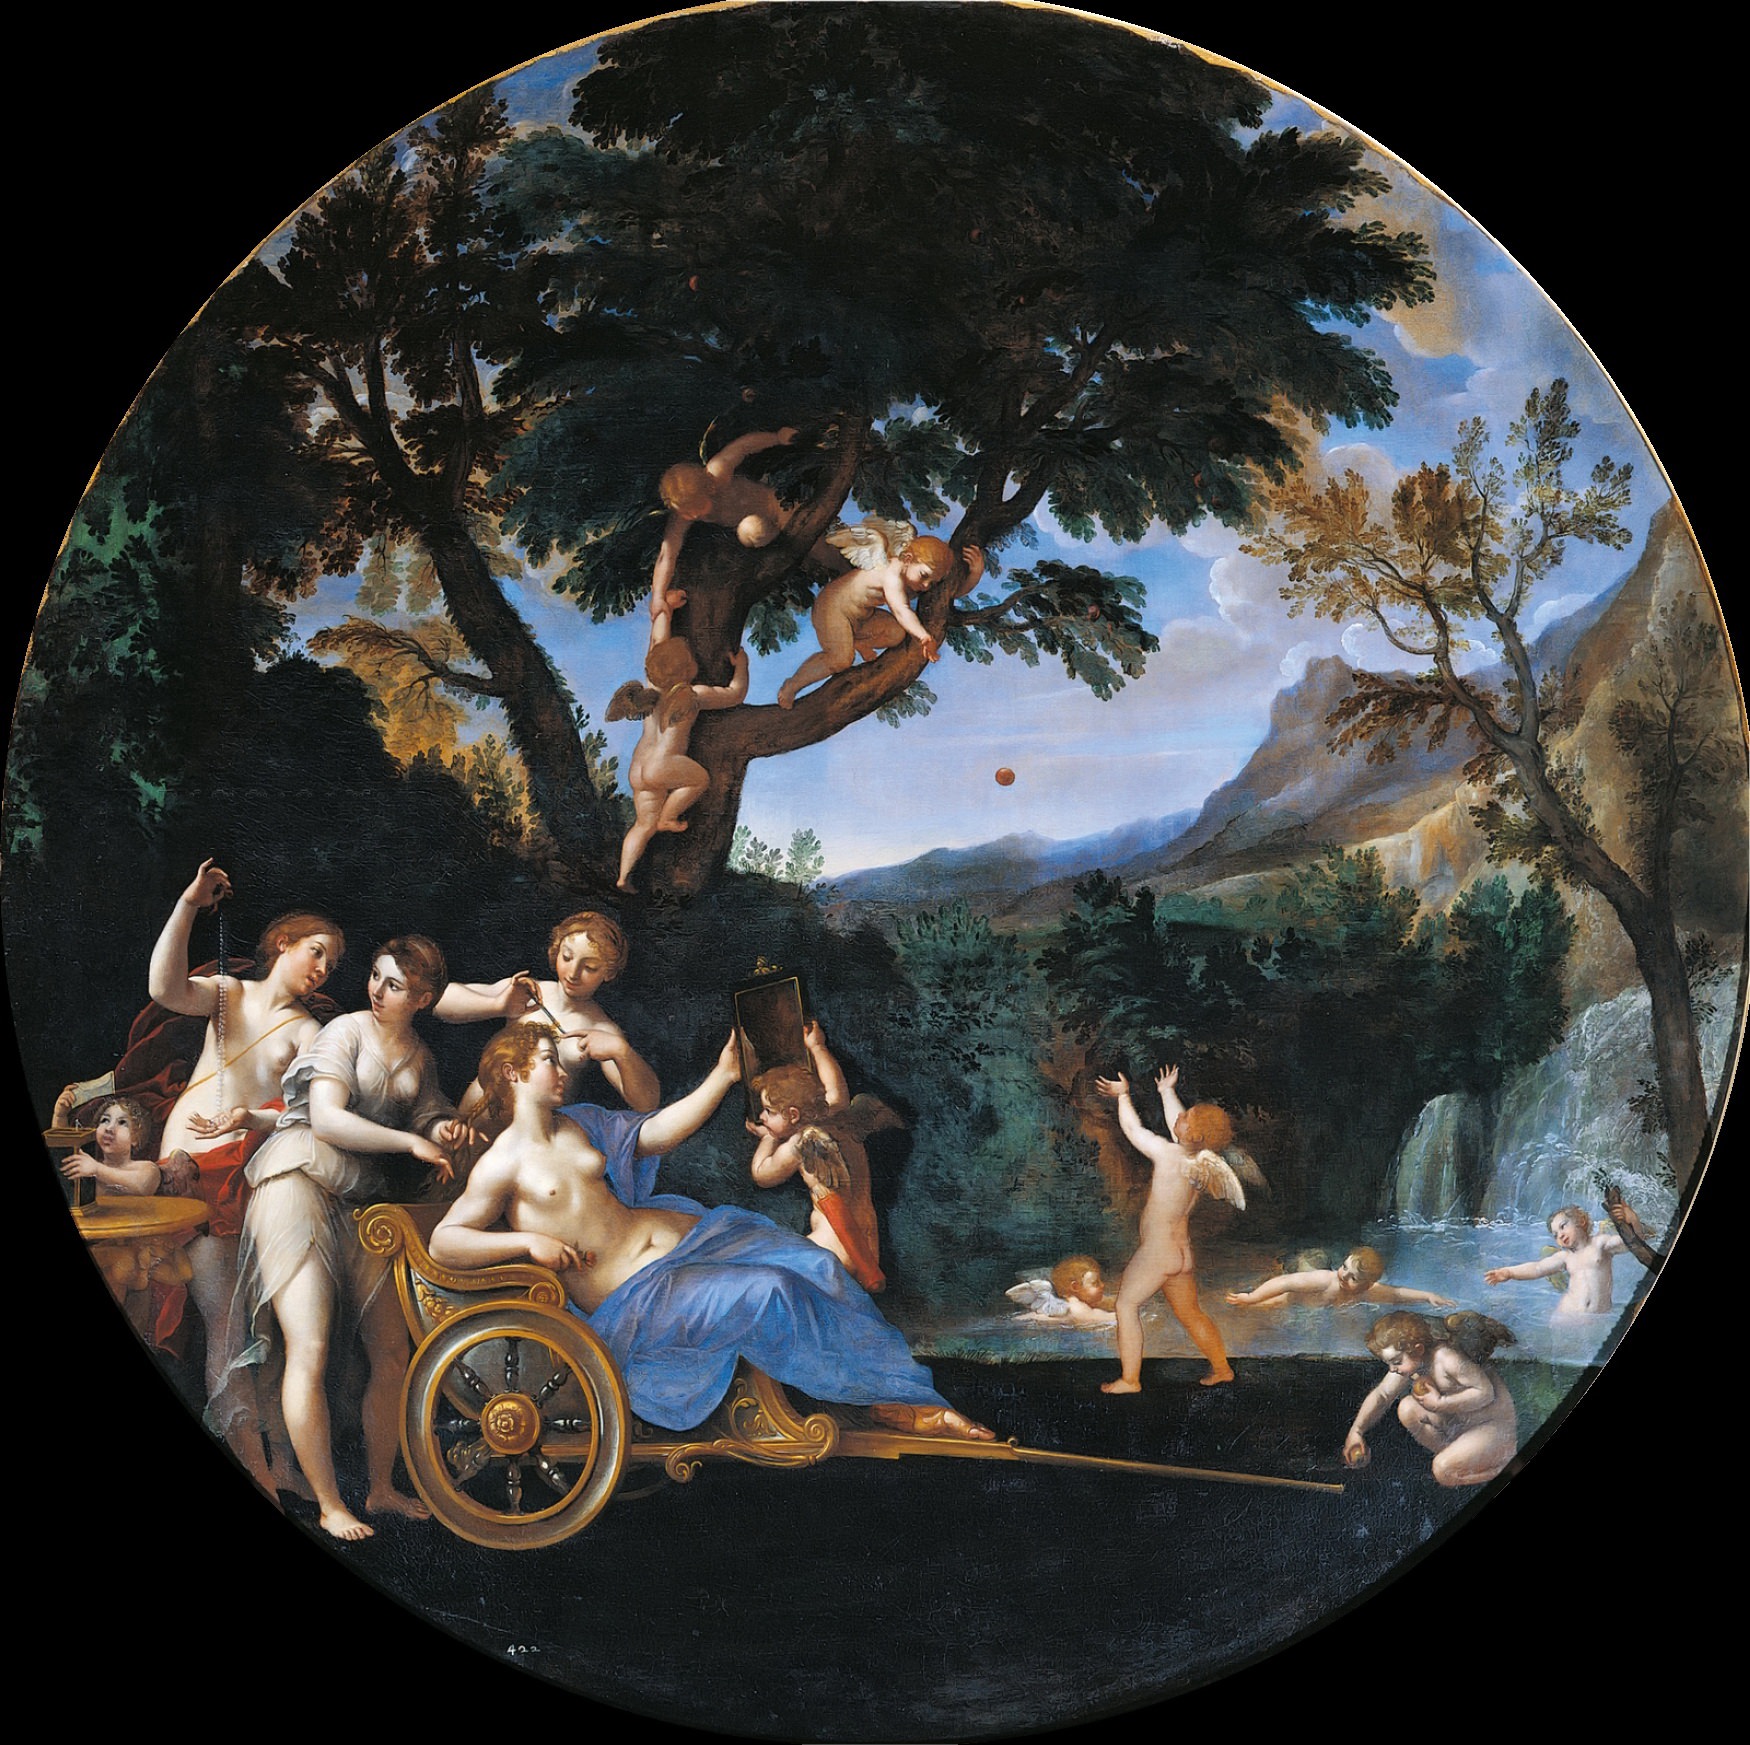 Франческо Альбани. "Весна". 1616-1617. Галерея Боргезе, Рим.